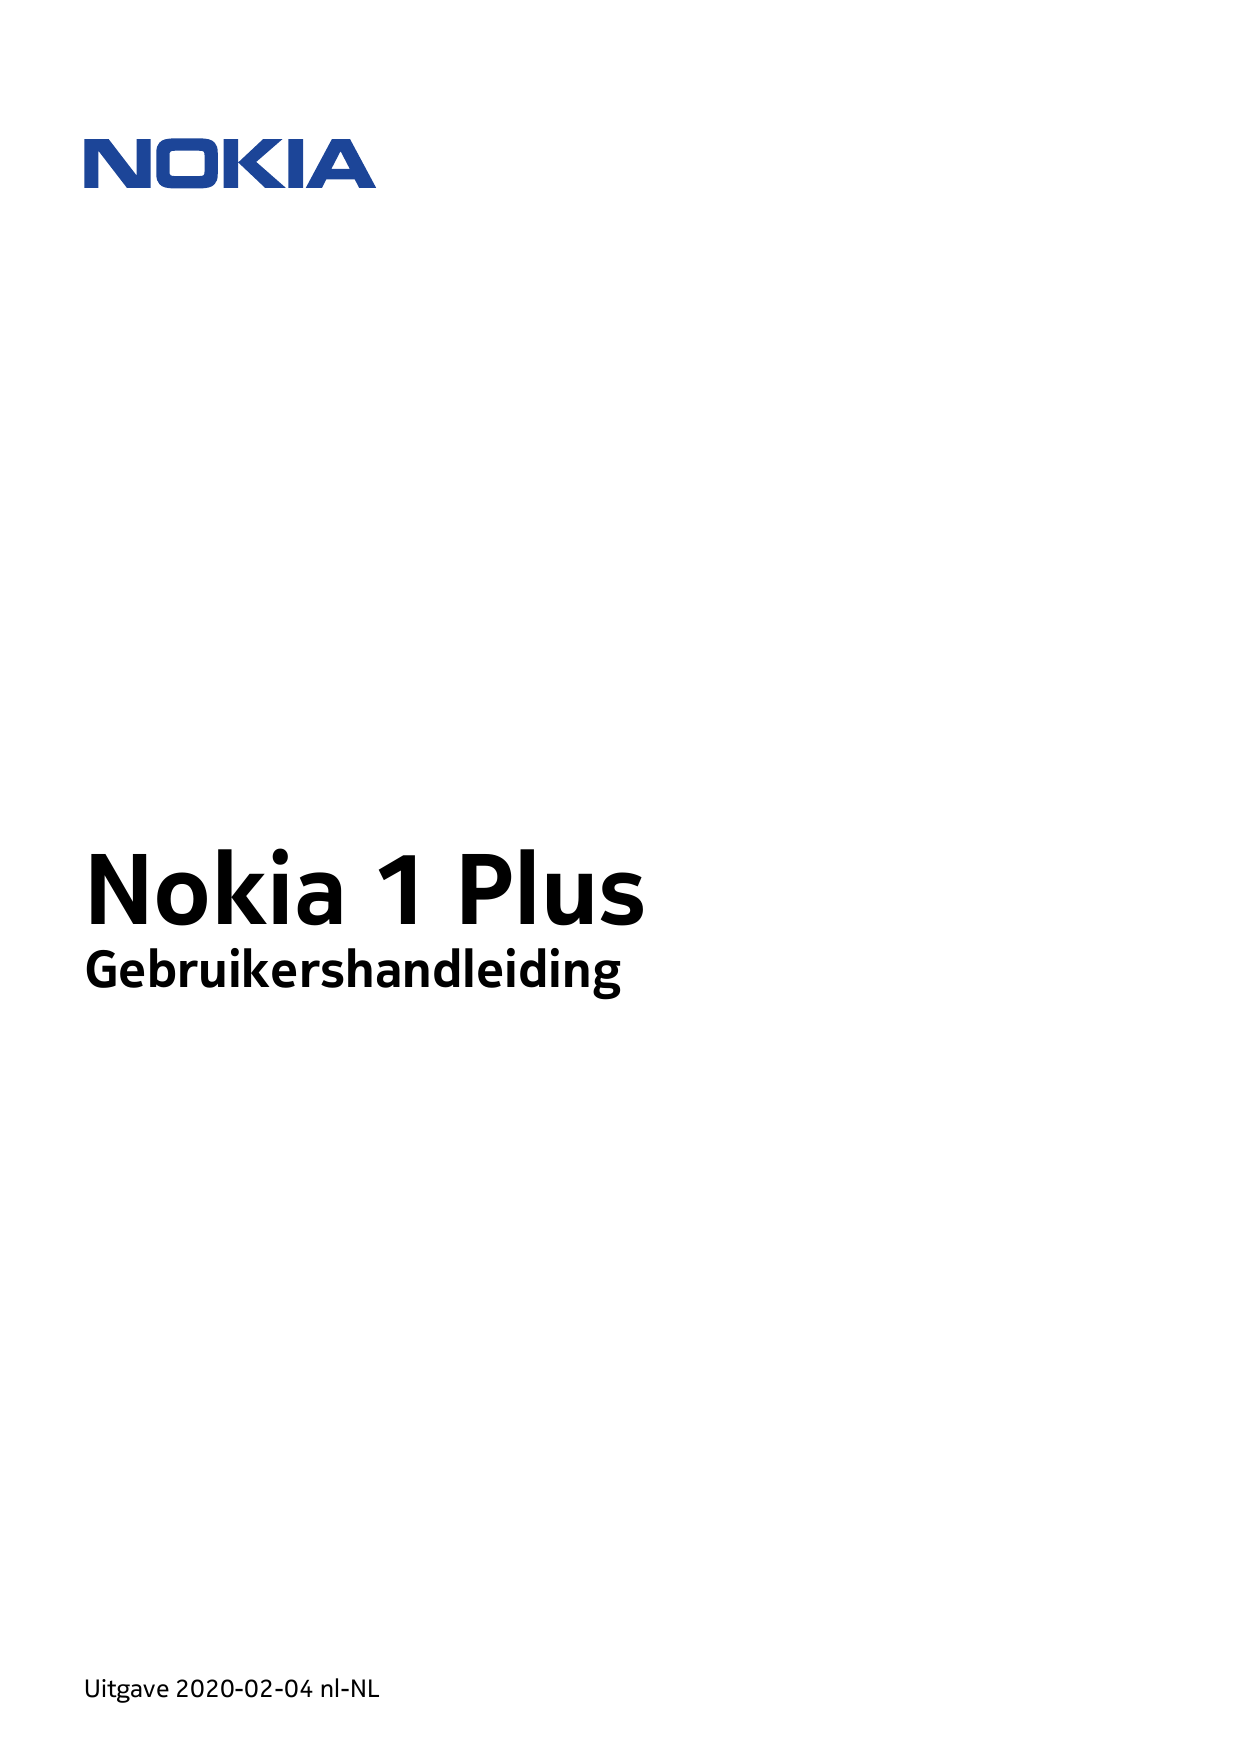 Nokia 1 PlusGebruikershandleidingUitgave 2020-02-04 nl-NL